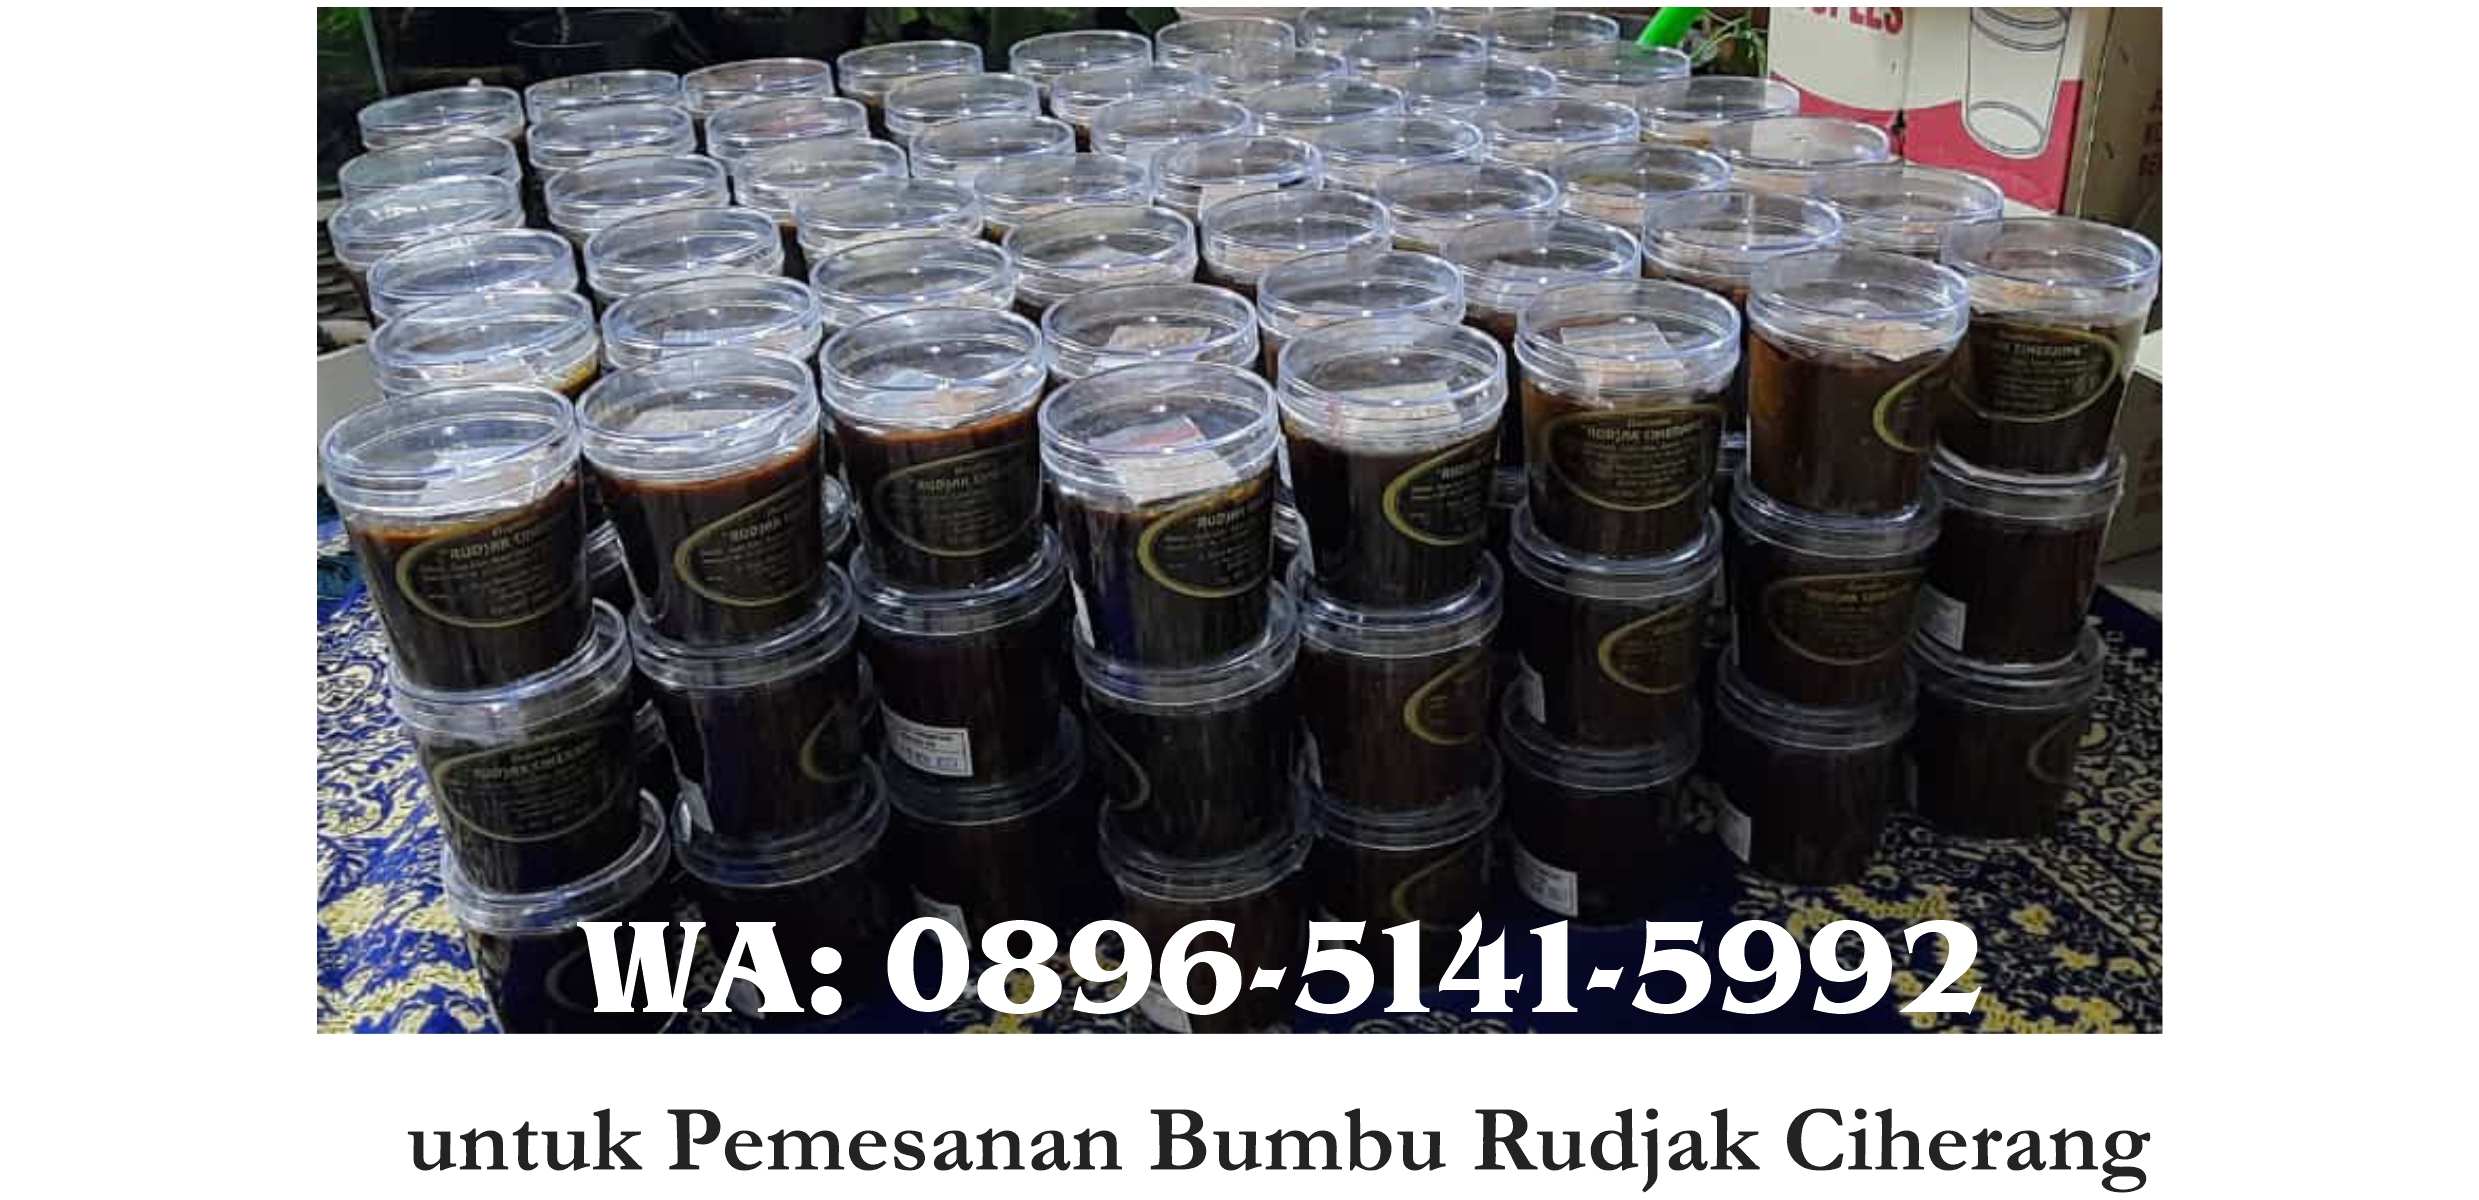 Kang Ade Truna kirim Bumbu Rudjak Ciherang ke Padma Hotel Bandung